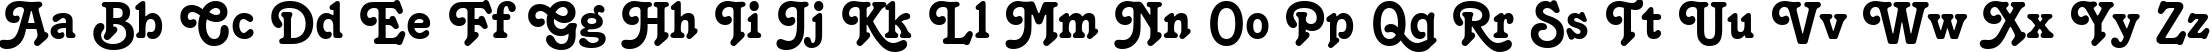 Пример написания английского алфавита шрифтом font240